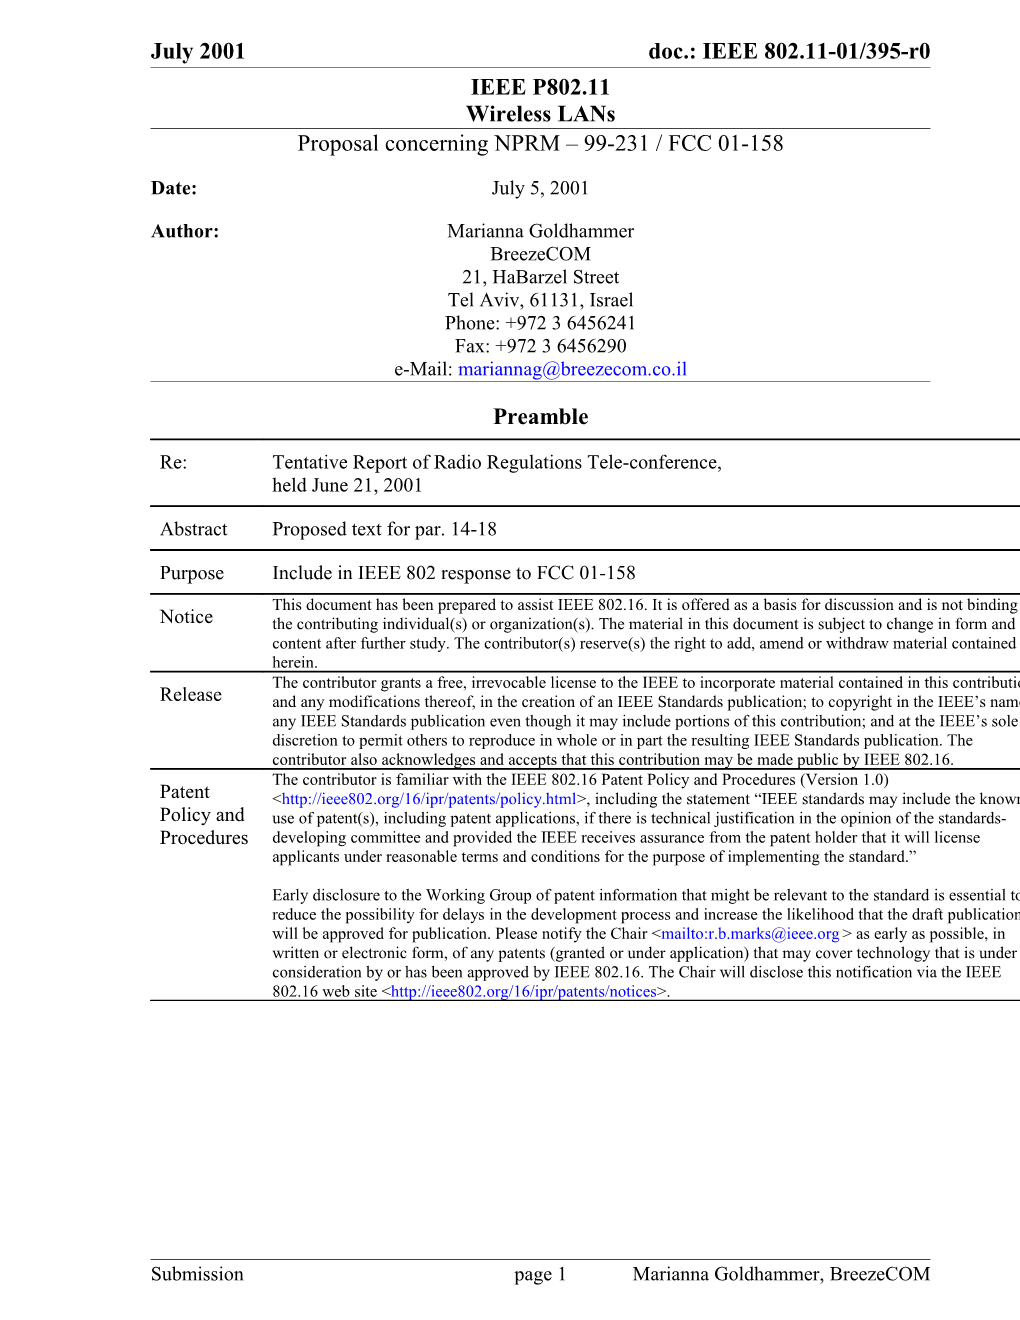 Proposal Concerning NPRM 99-231 / FCC 01-158